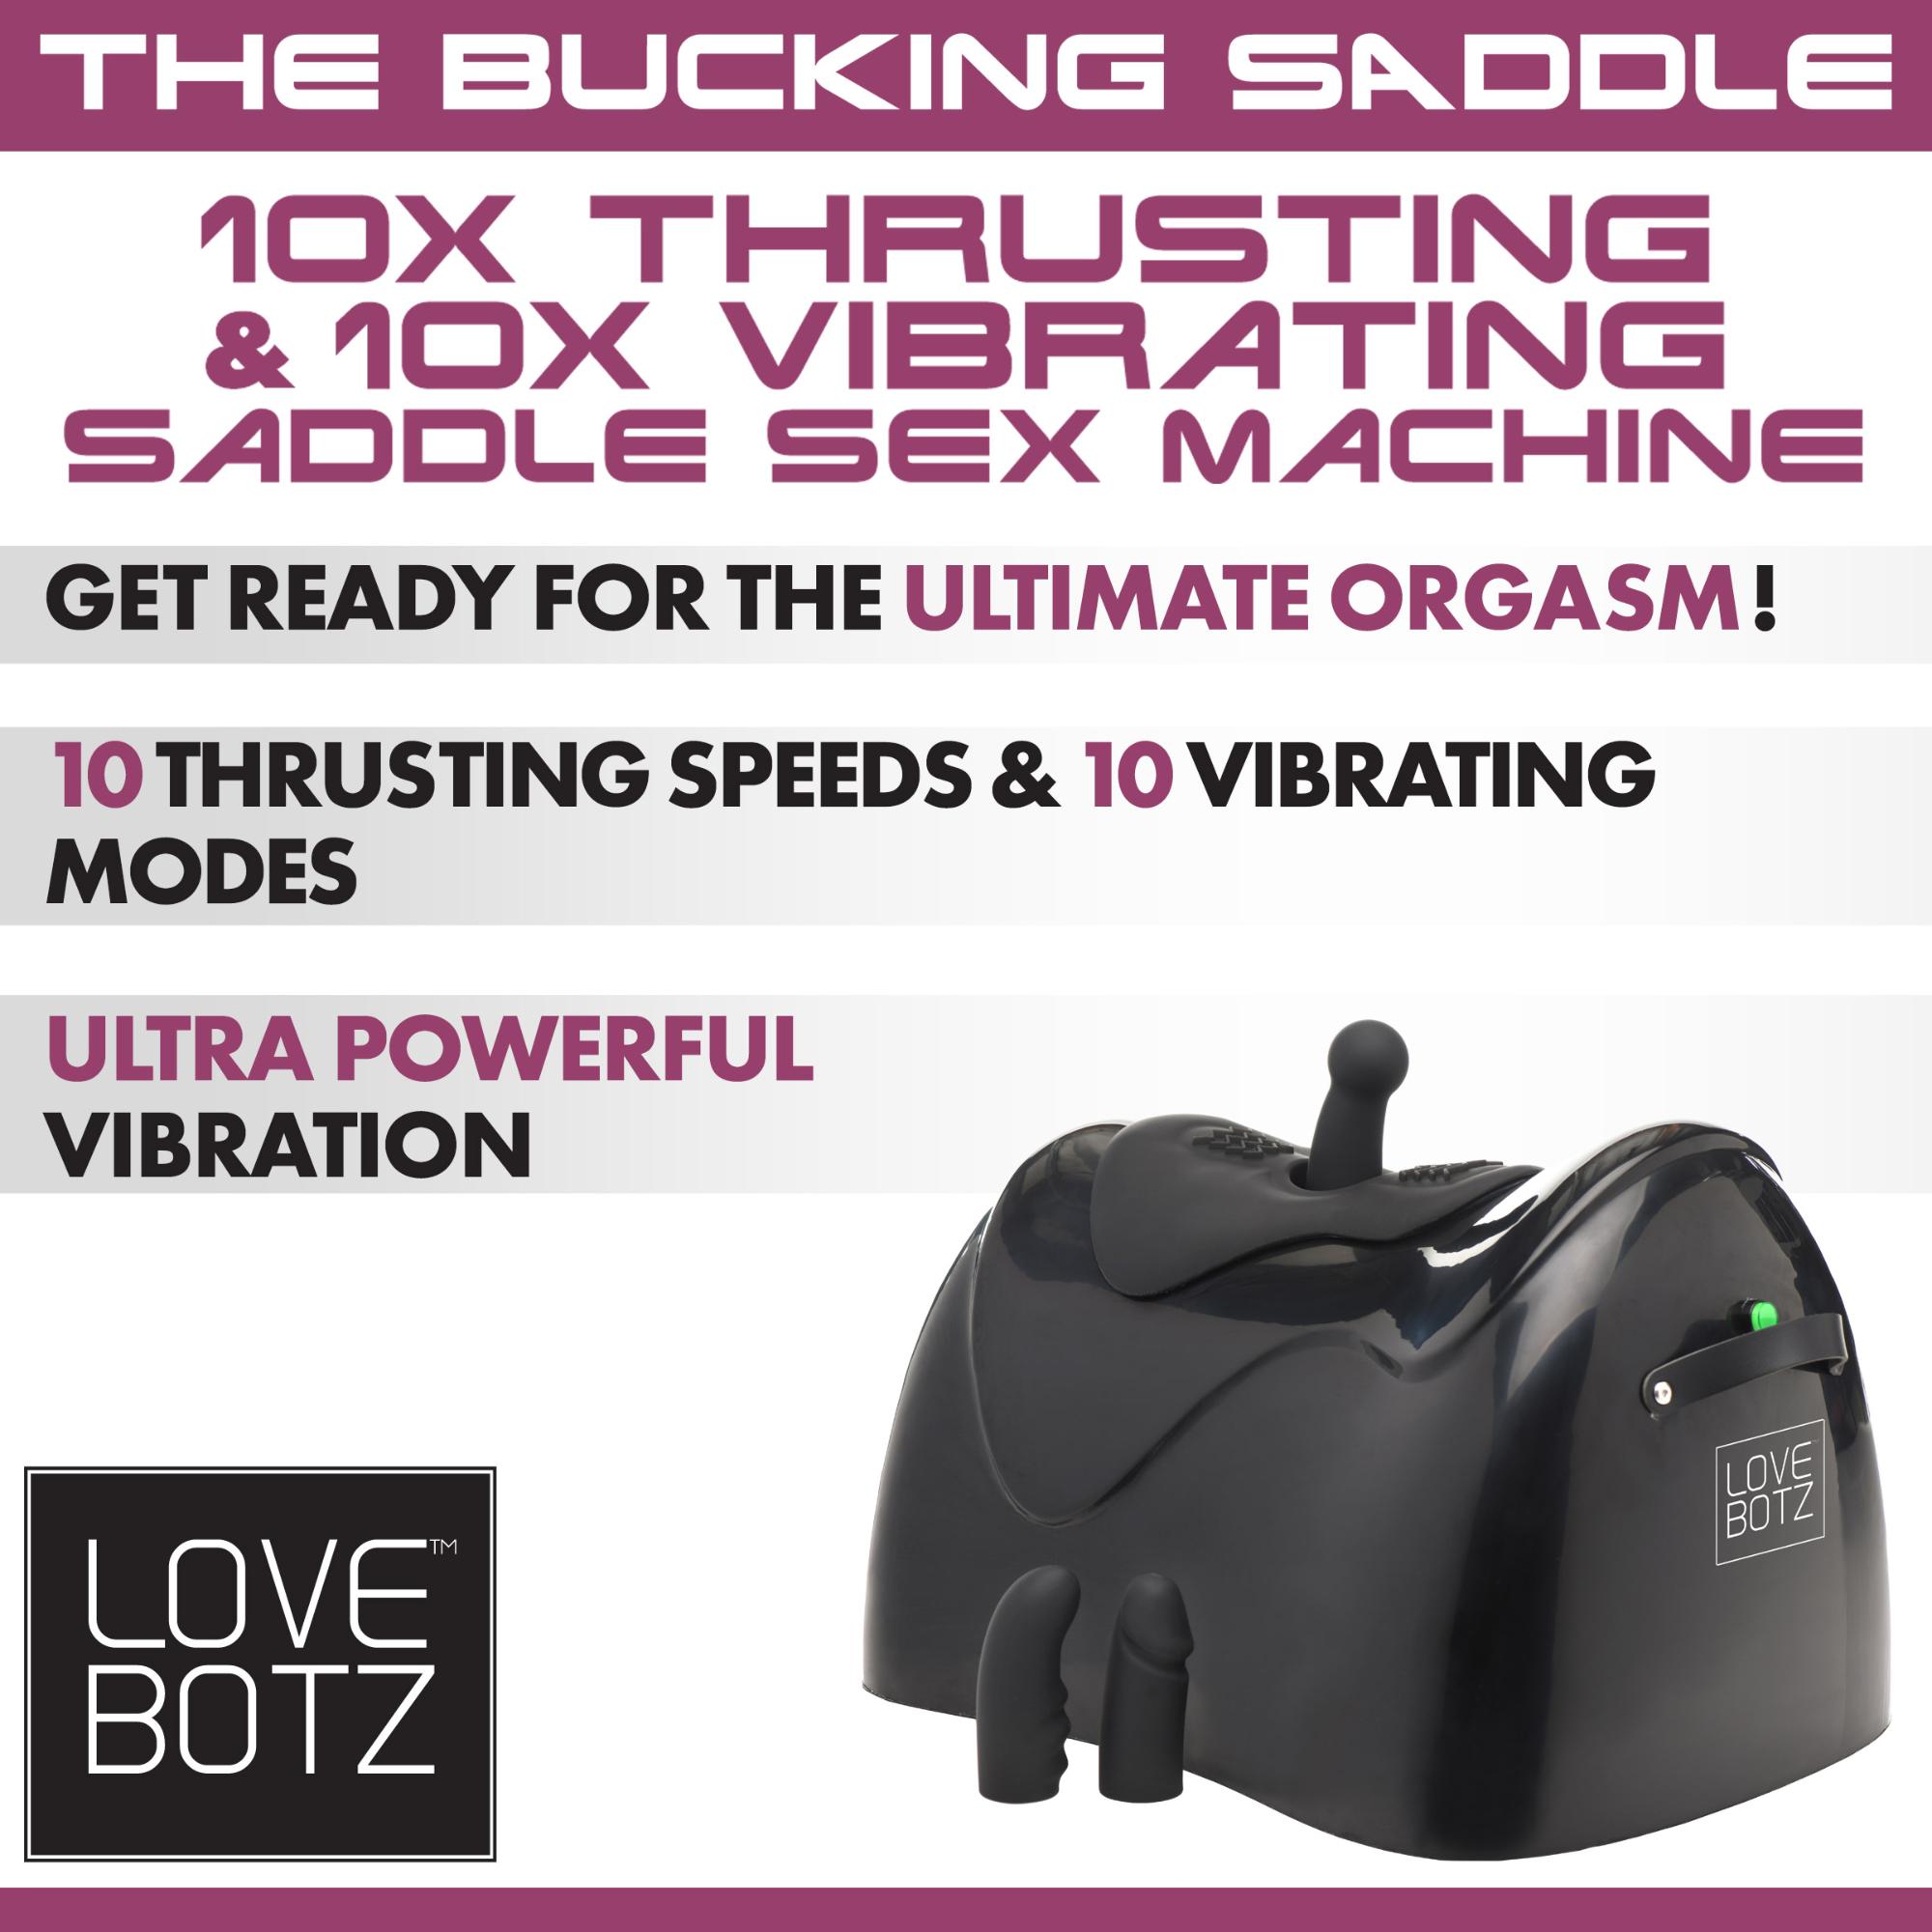 LoveBotz The Bucking Saddle 10X Thrusting & 10X Vibrating Saddle Sex Machine